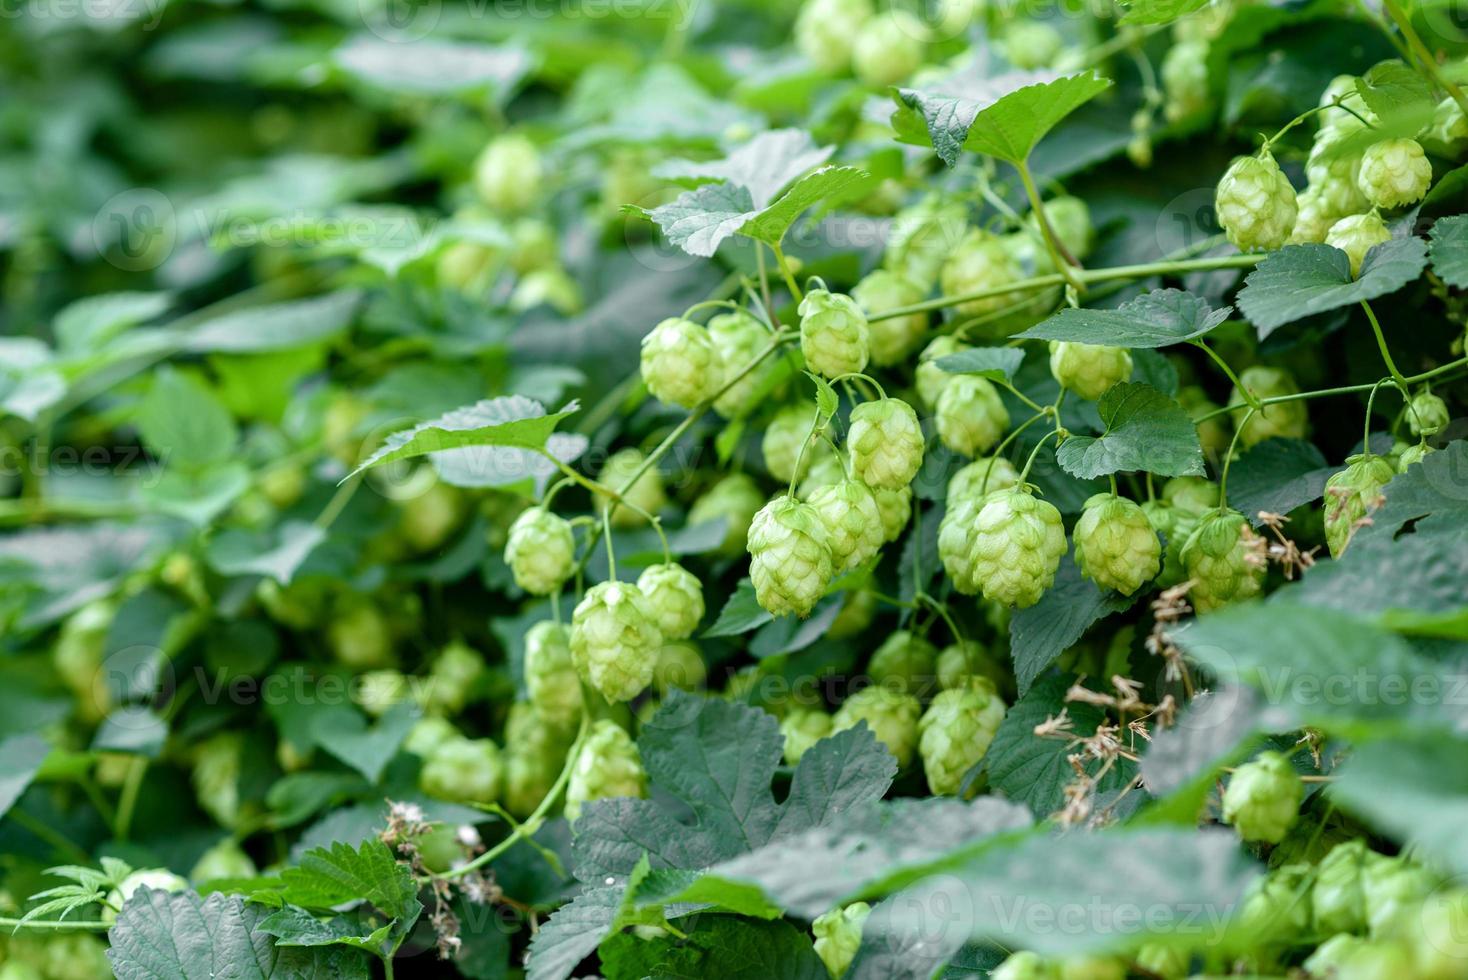 groene verse hopbellen voor het maken van bier en broodclose-up foto